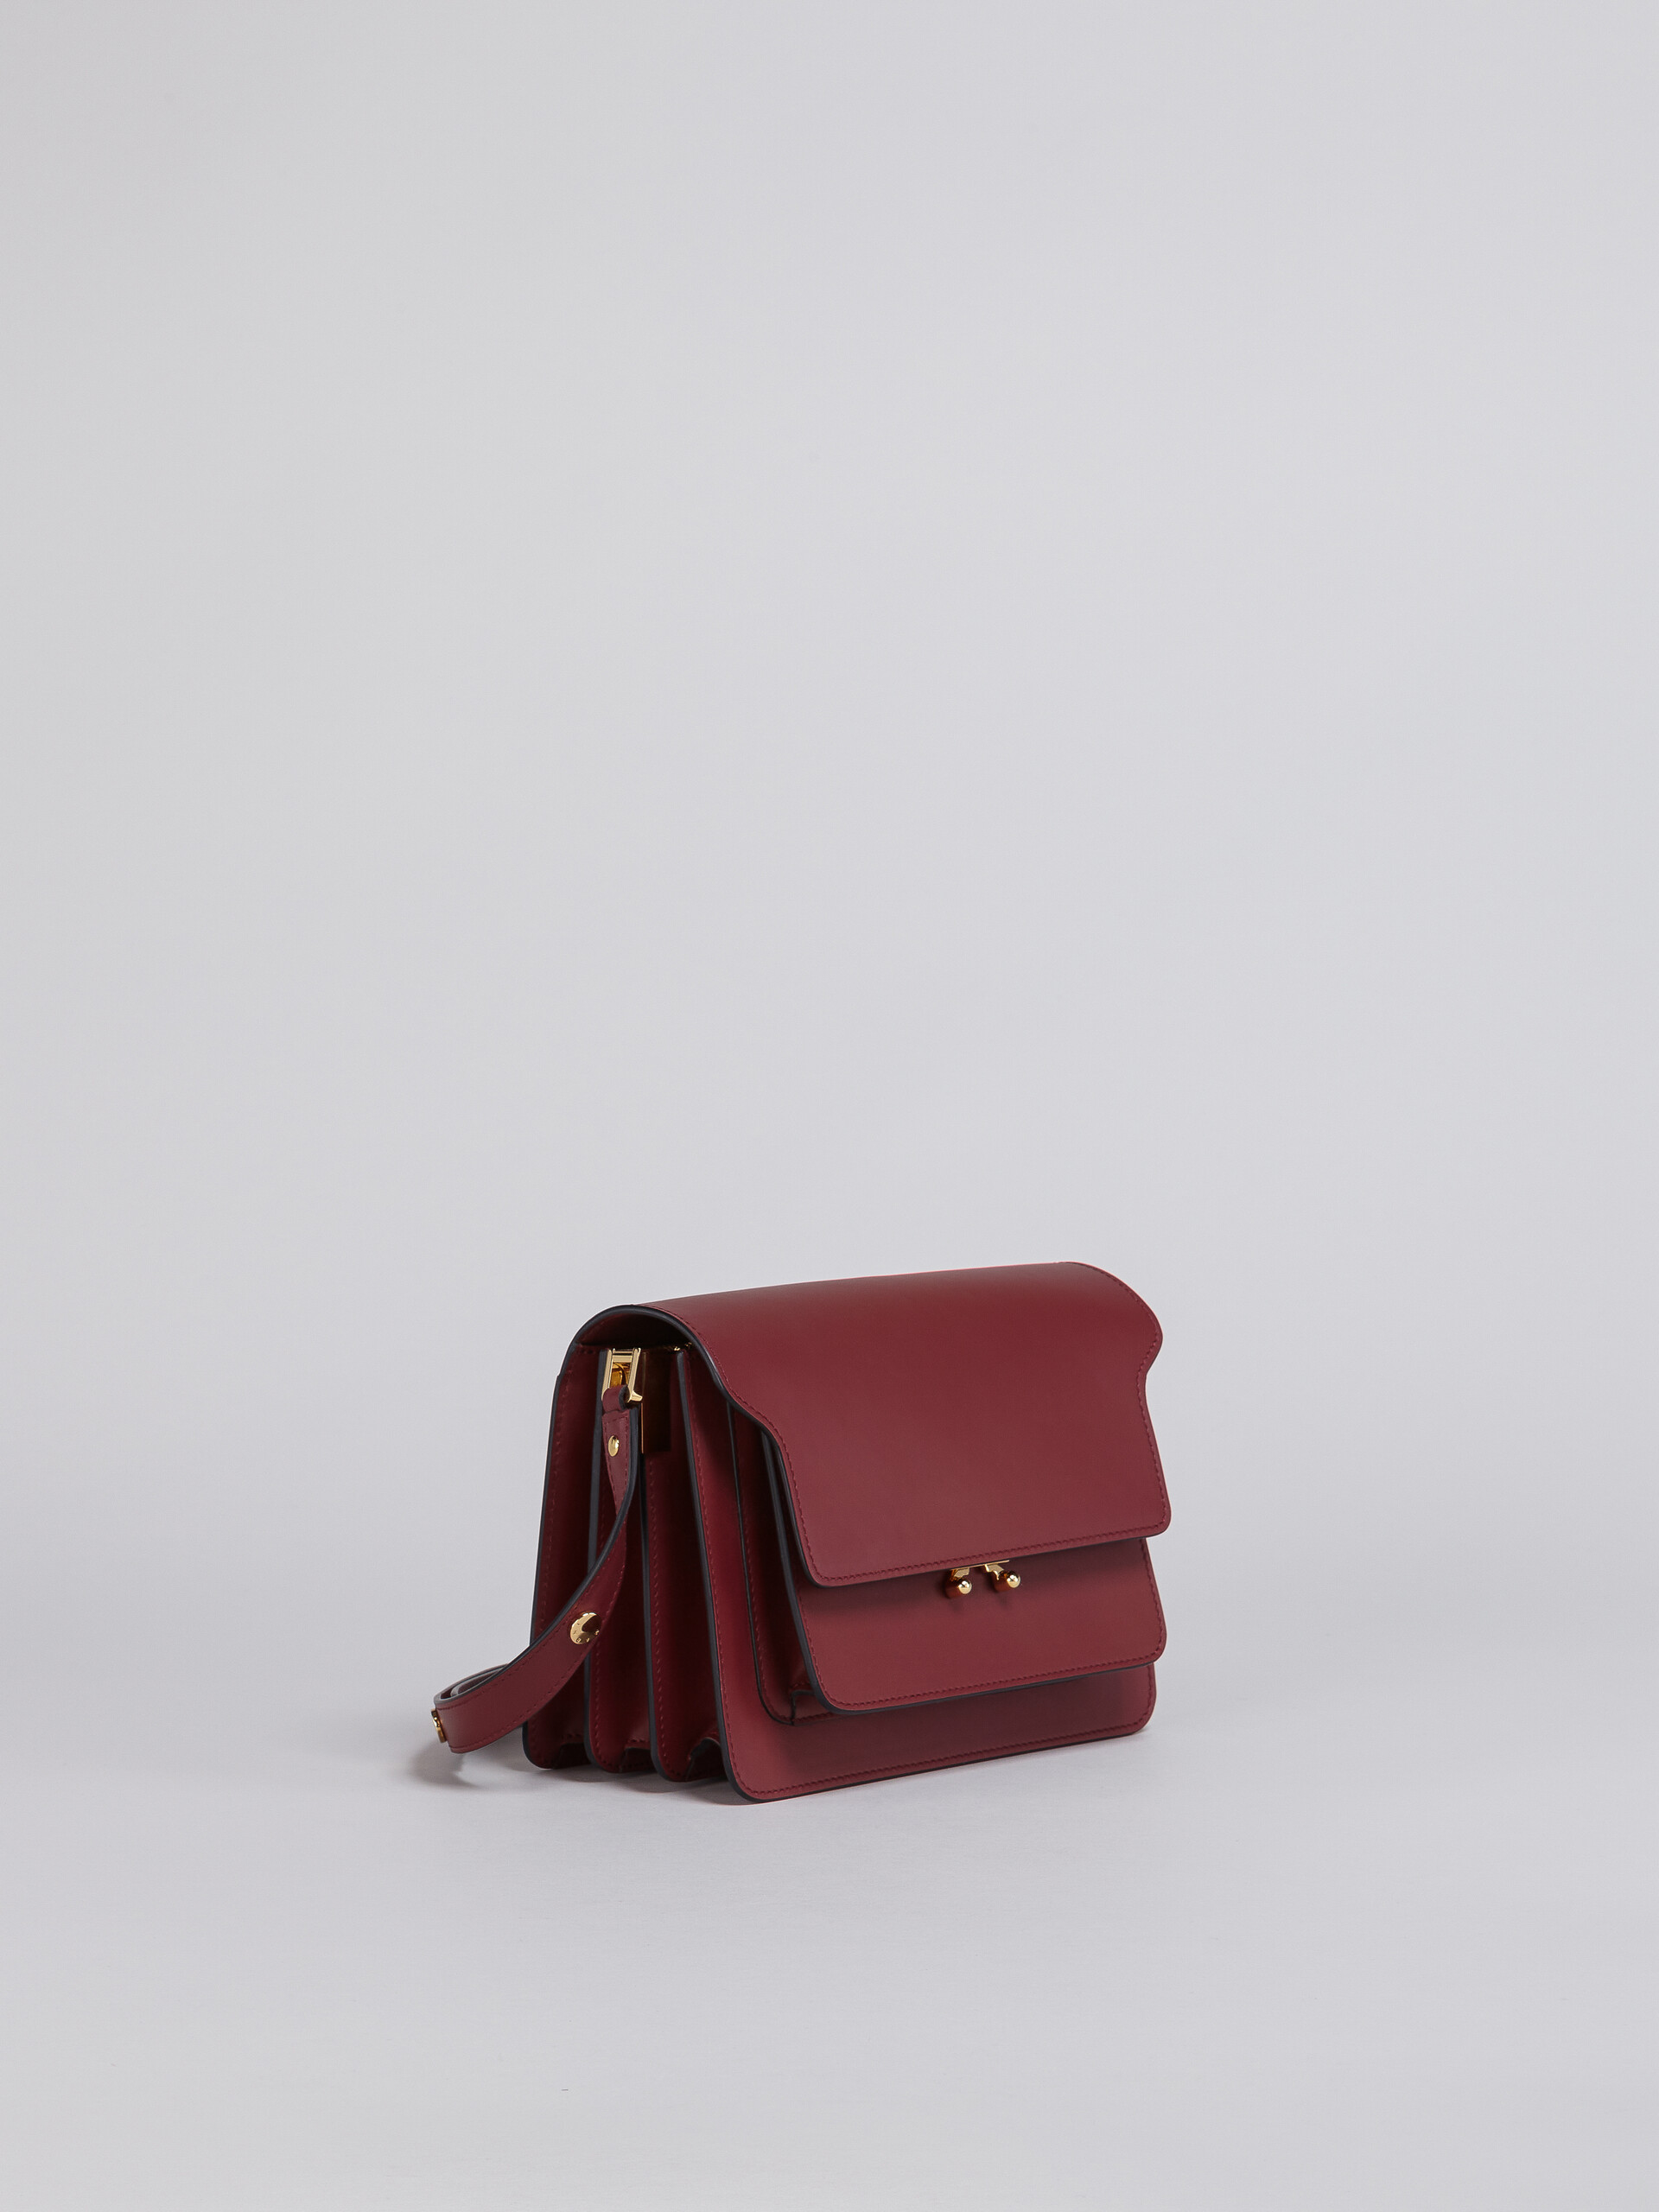 TRUNK bag in vitello - Borse a spalla - Image 5